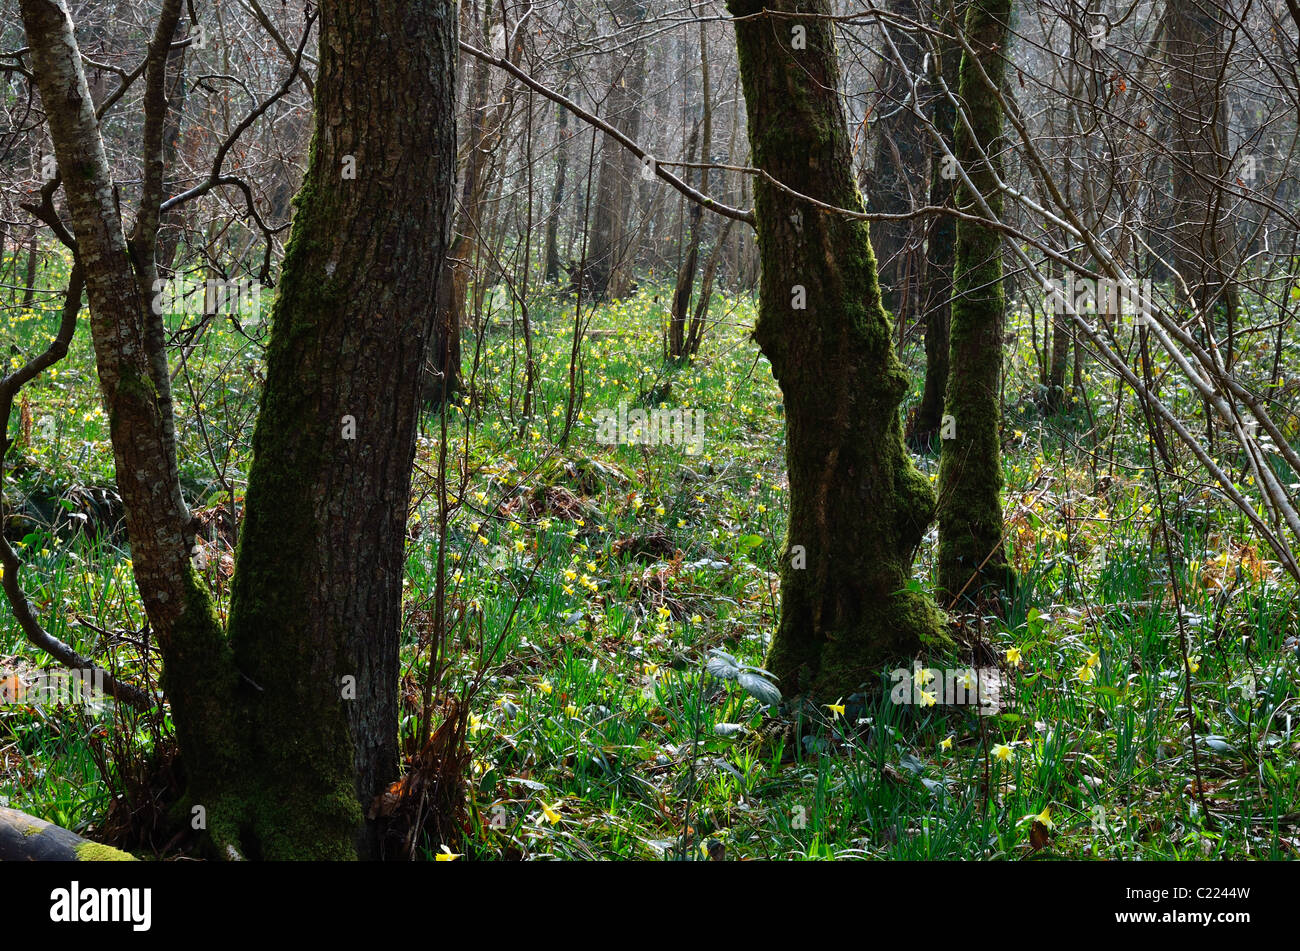 Les jonquilles sauvages dans une clairière à Dunsford Wood, le Devon Wildlife Trust Réserver Banque D'Images